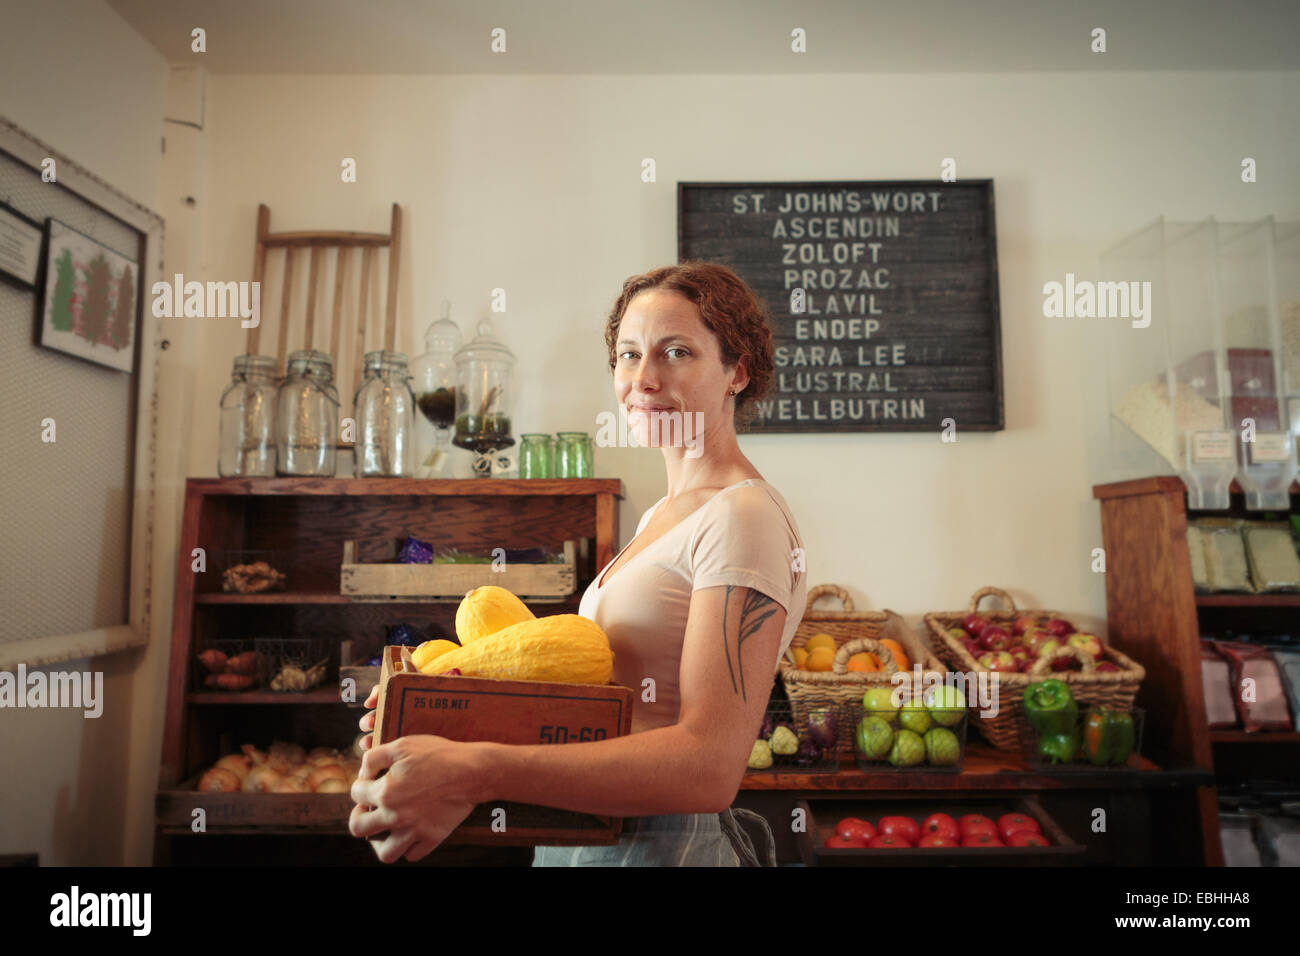 Porträt von weiblichen Verkäuferin mit Obst und Gemüse Kiste im Dorfladen Stockfoto